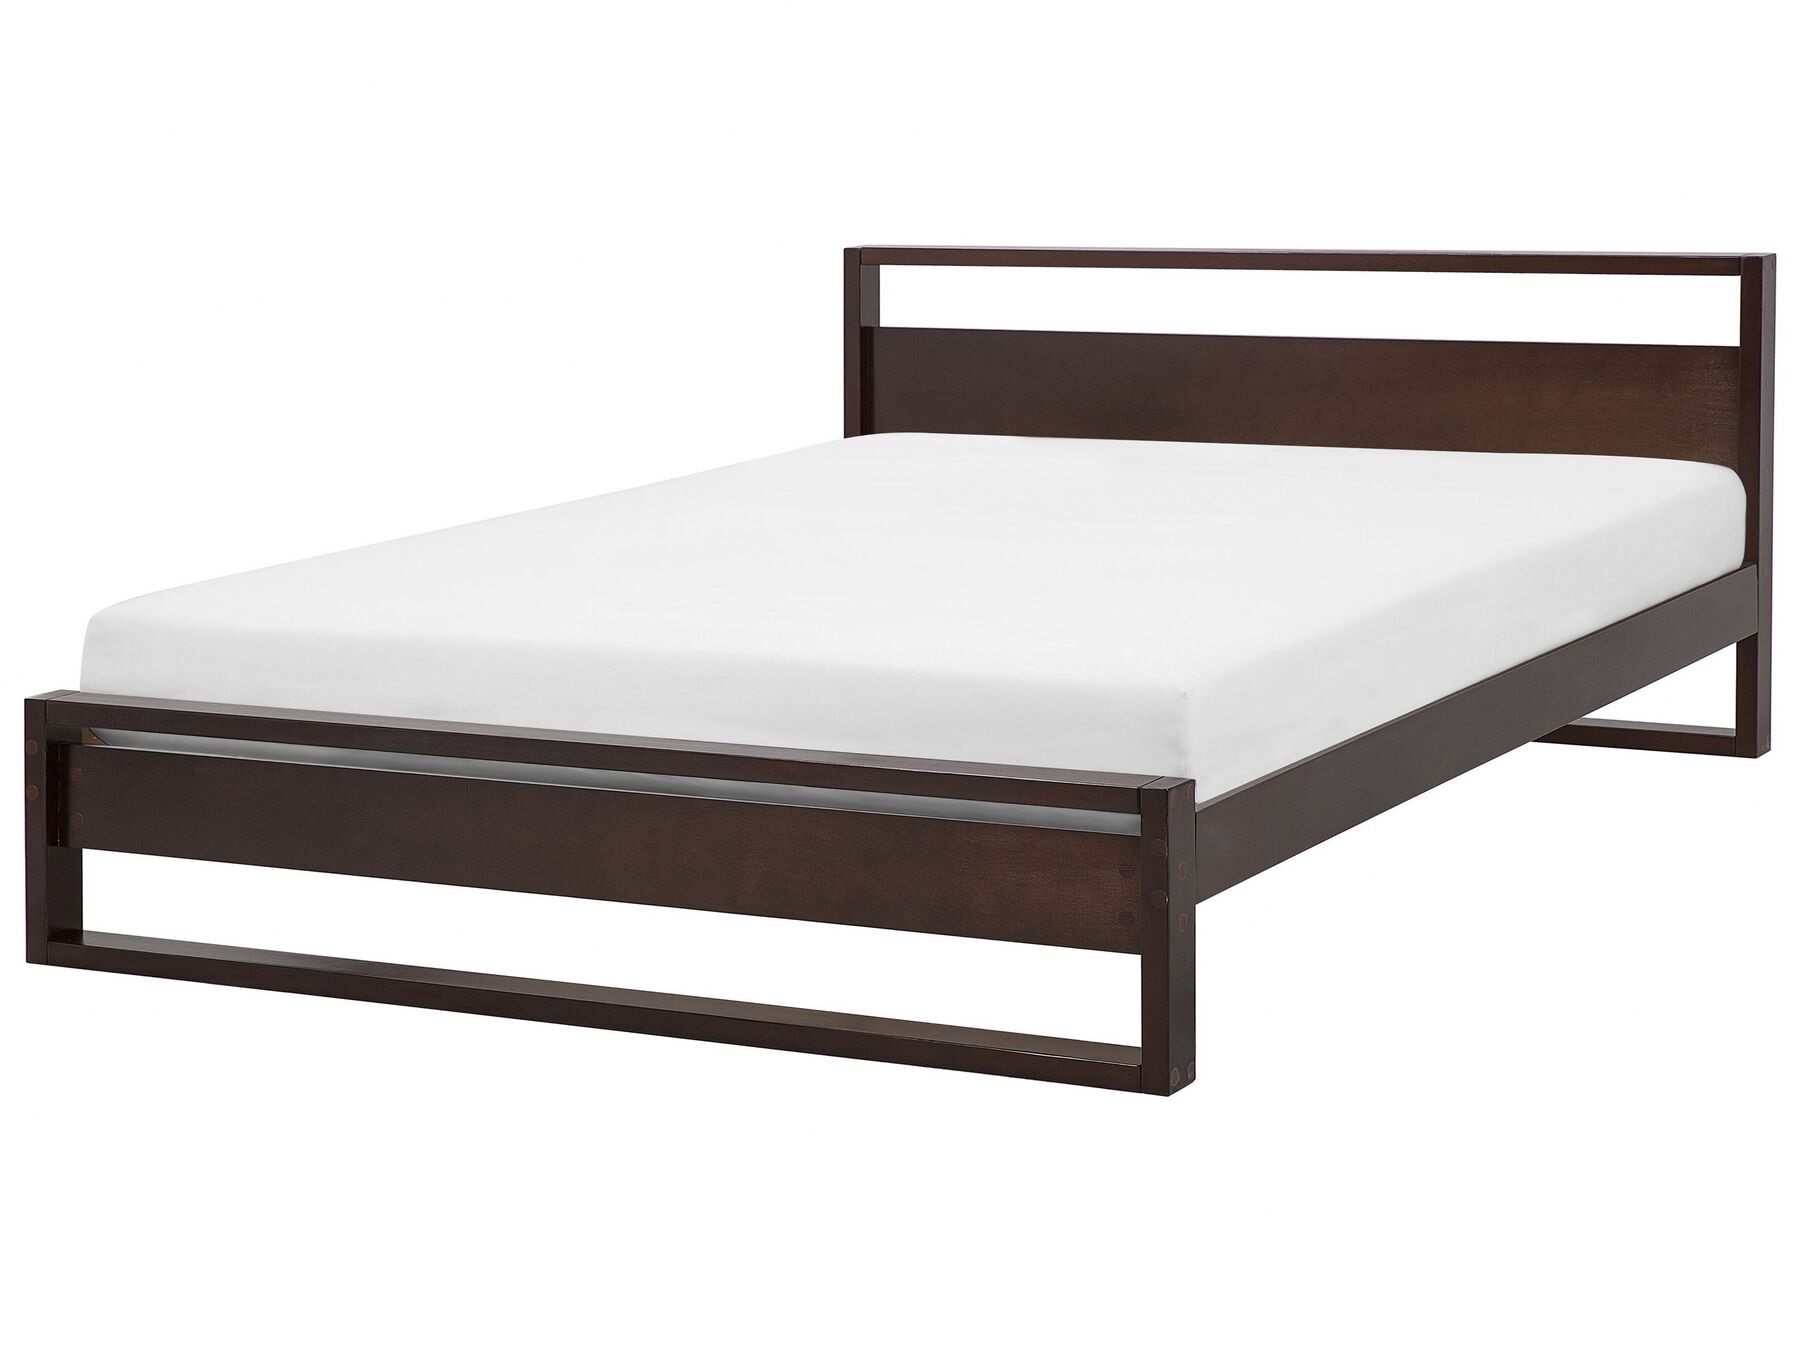 Dřevěná manželská postel 180x200 cm GIULIA_743795